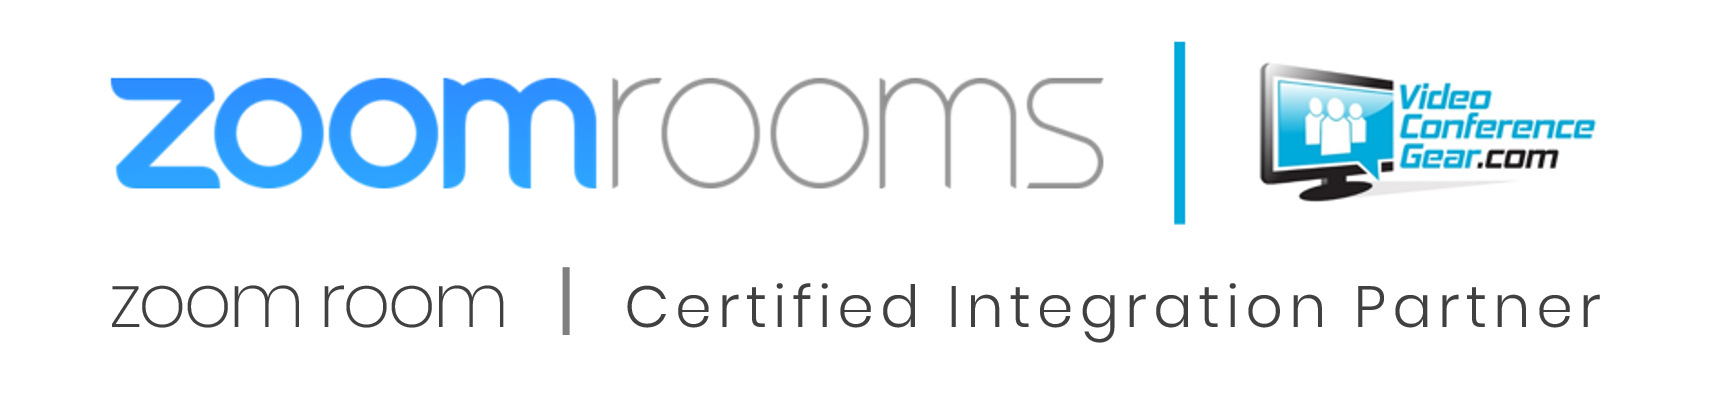 VideoConferenceGear.com named a Zoom Room Certified Integration Partner